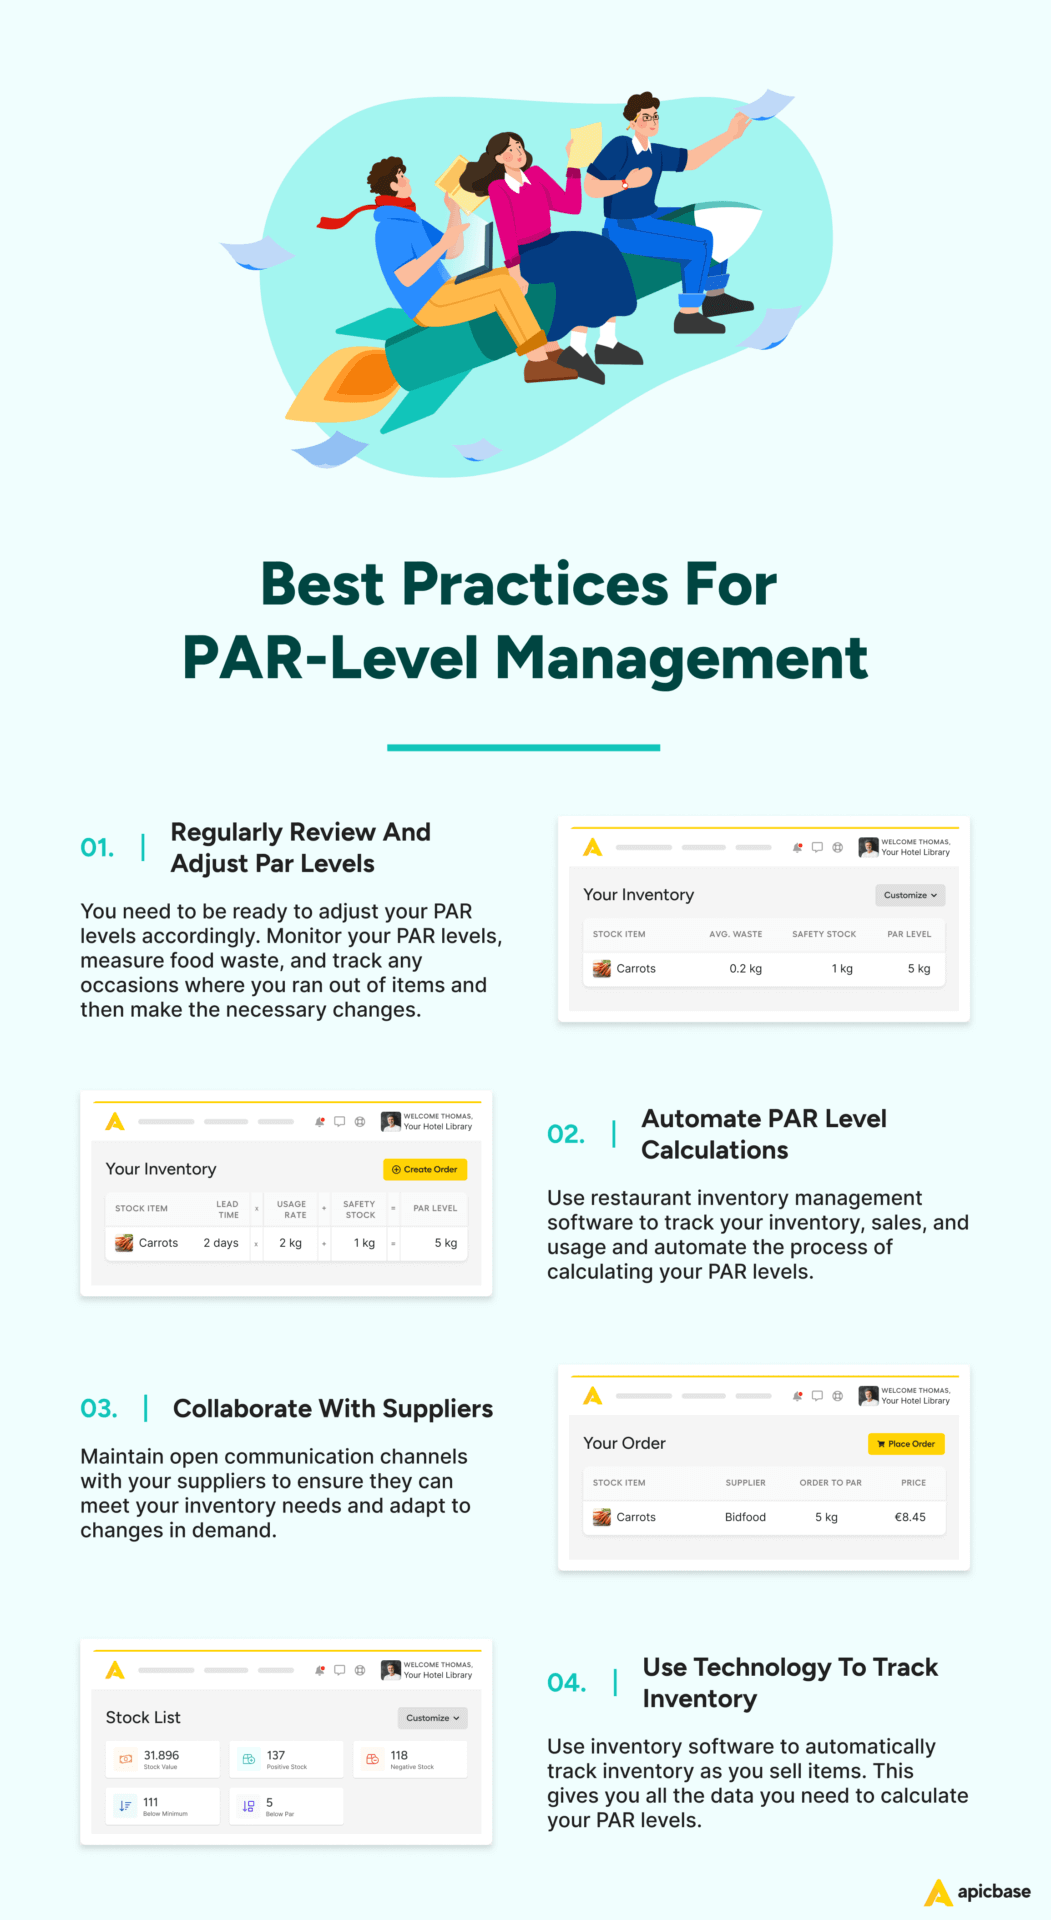 Best Practices for PAR-Level Management